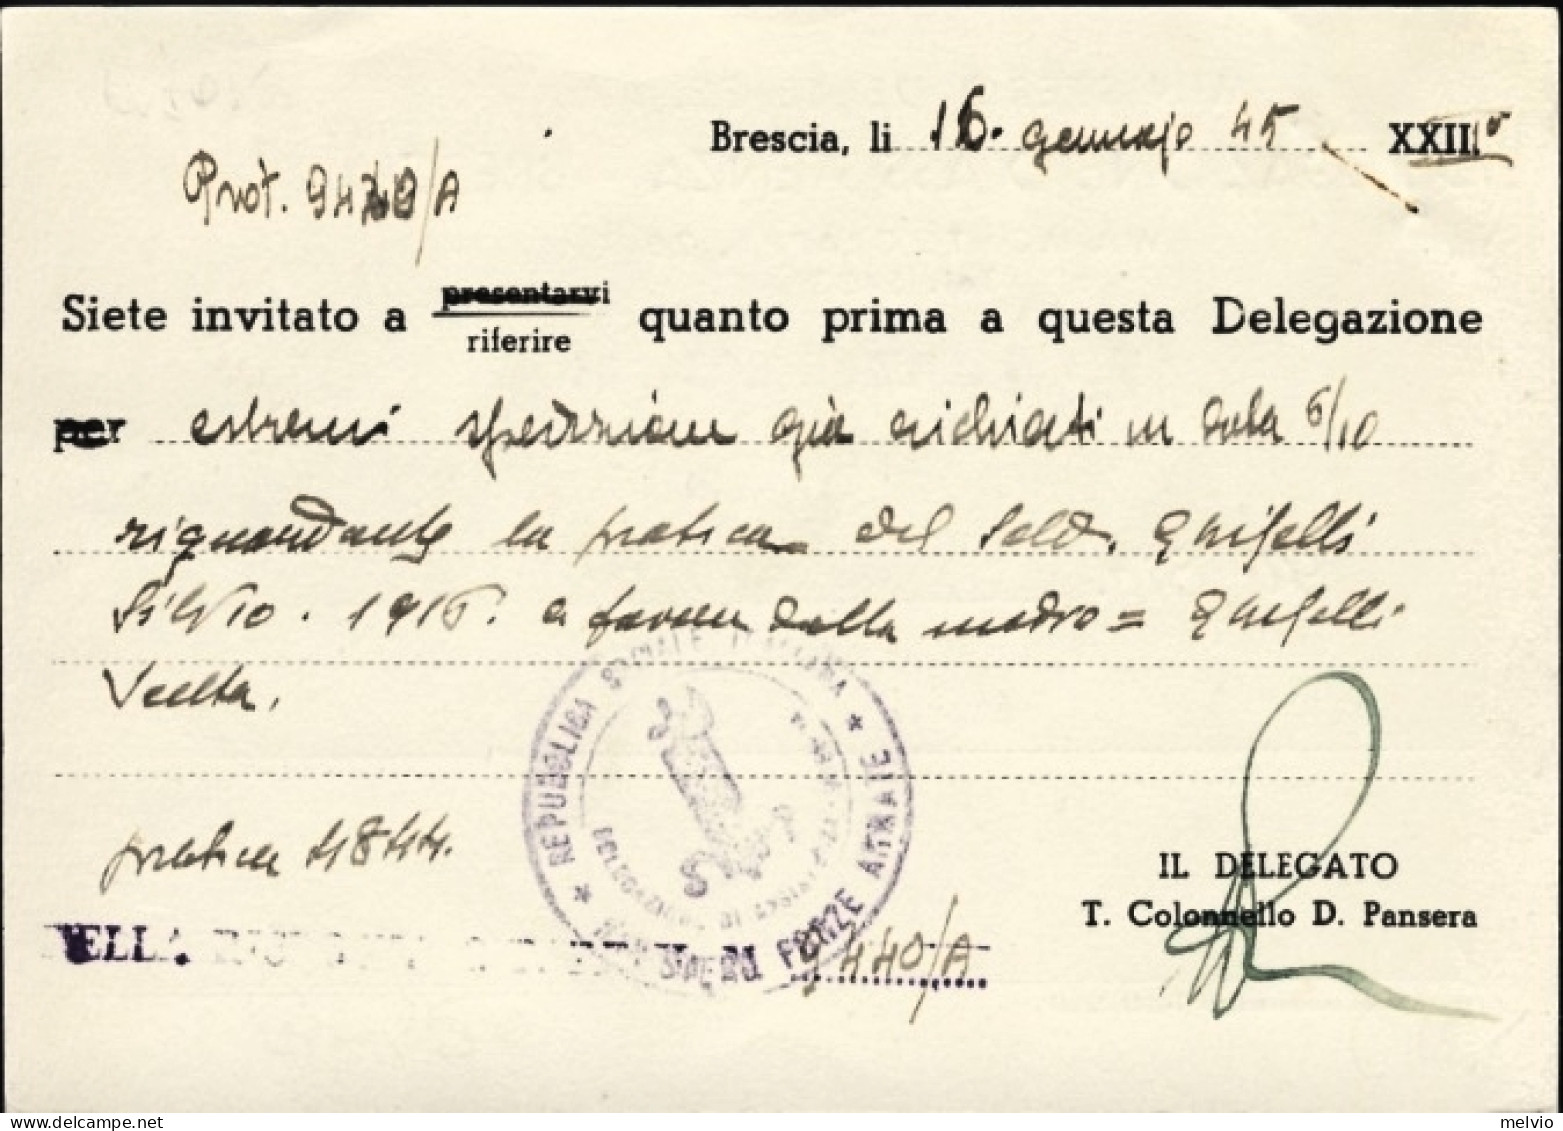 1945-RSI Cartolina Ministero FFAA Delegazione Assistenza Brescia Viaggiata - Poststempel